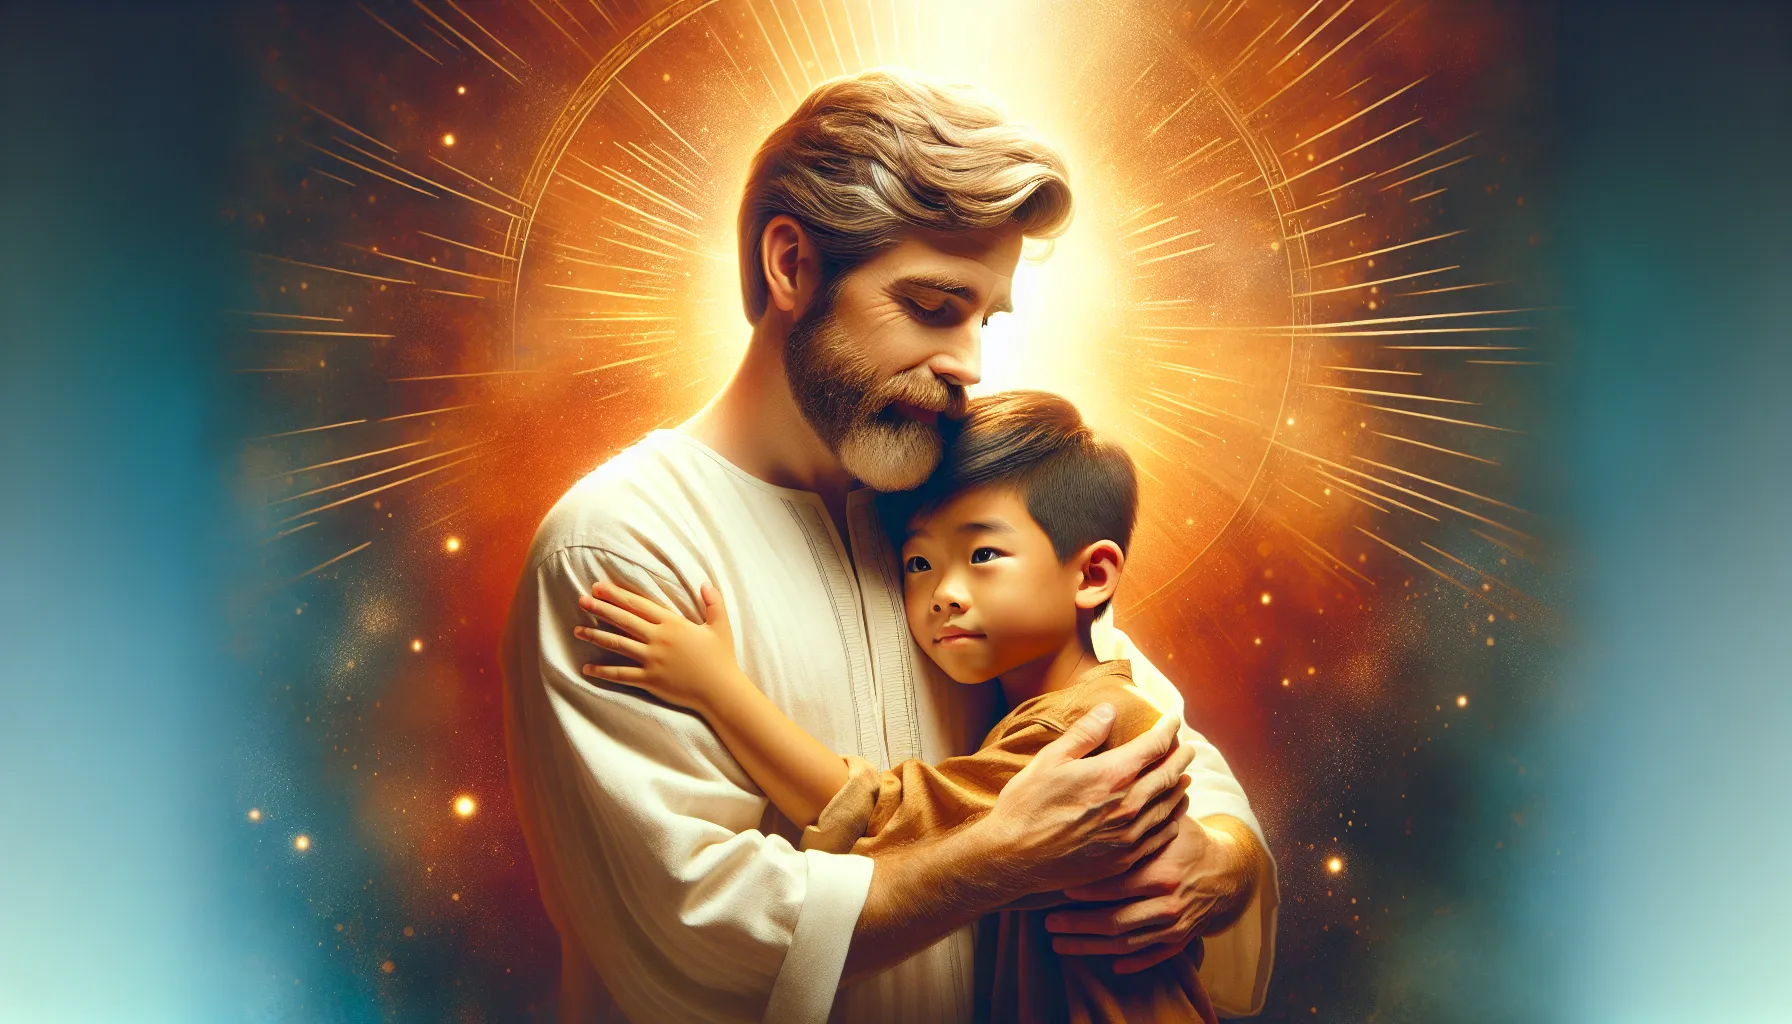 Imagen representativa de un padre abrazando a su hijo, ilustrando las enseñanzas bíblicas sobre la paternidad espiritual y el amor de Dios hacia sus hijos.